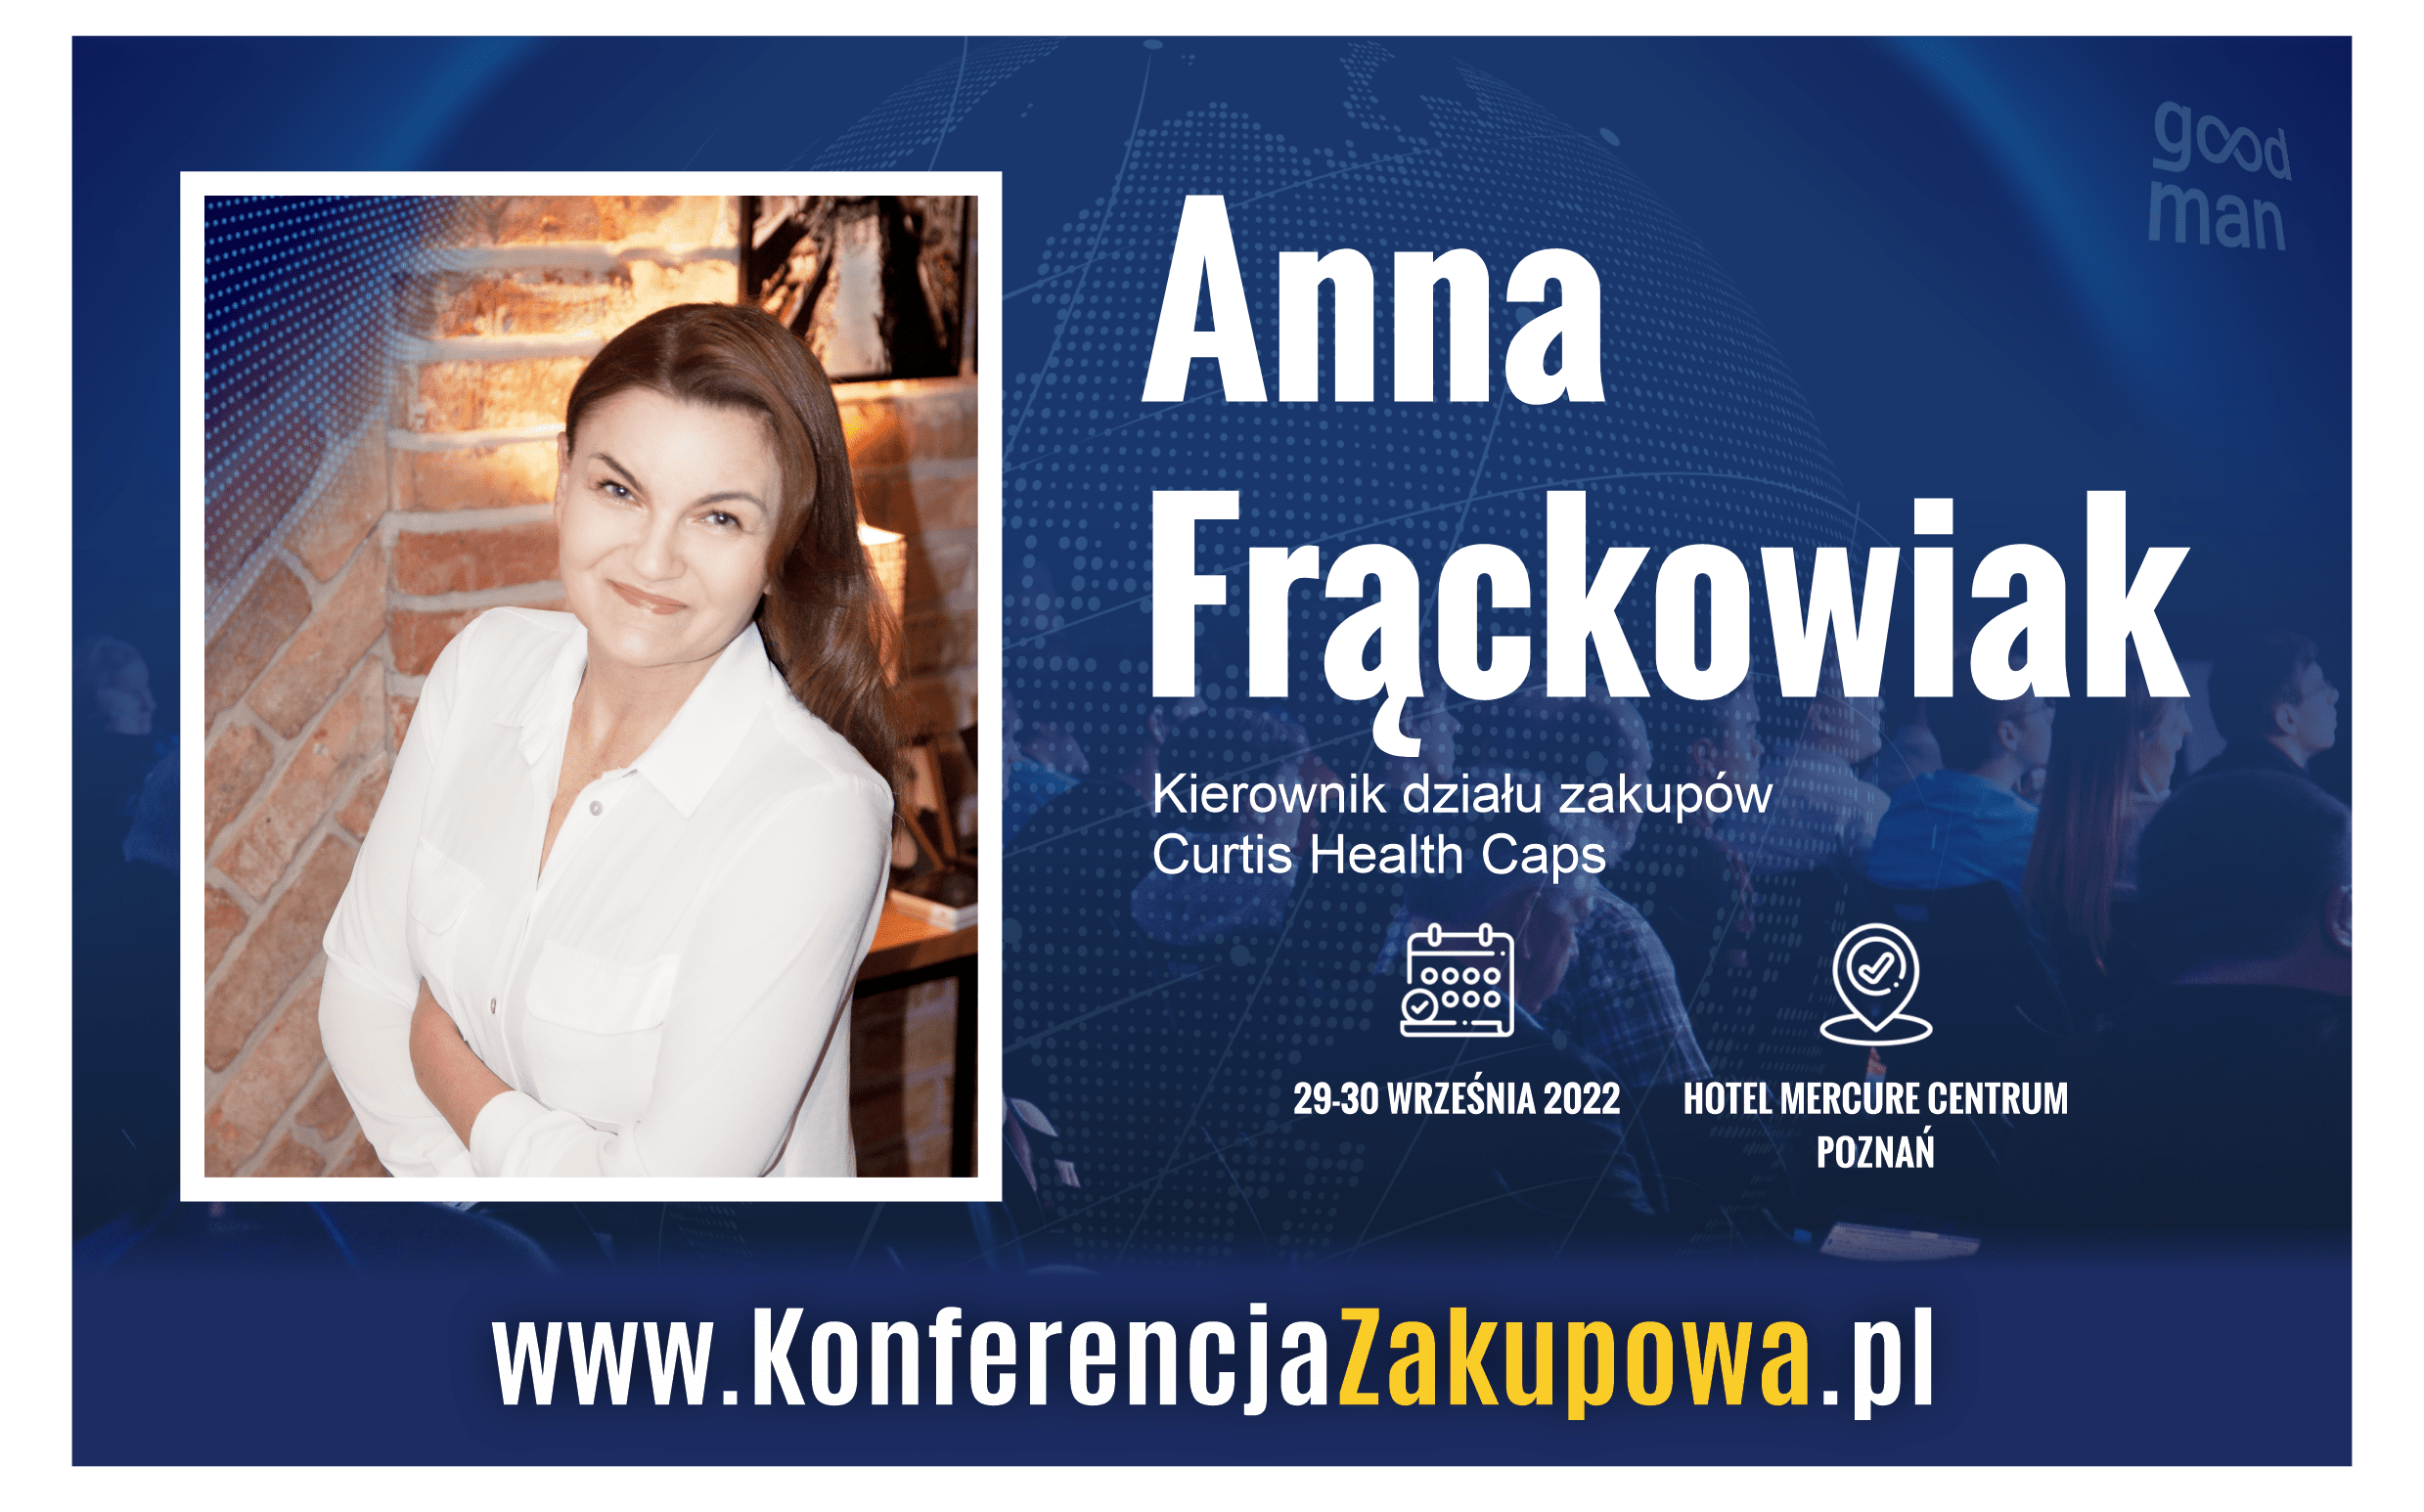 anna frackowiak konferencja zakupowa procurment conference poland 2022